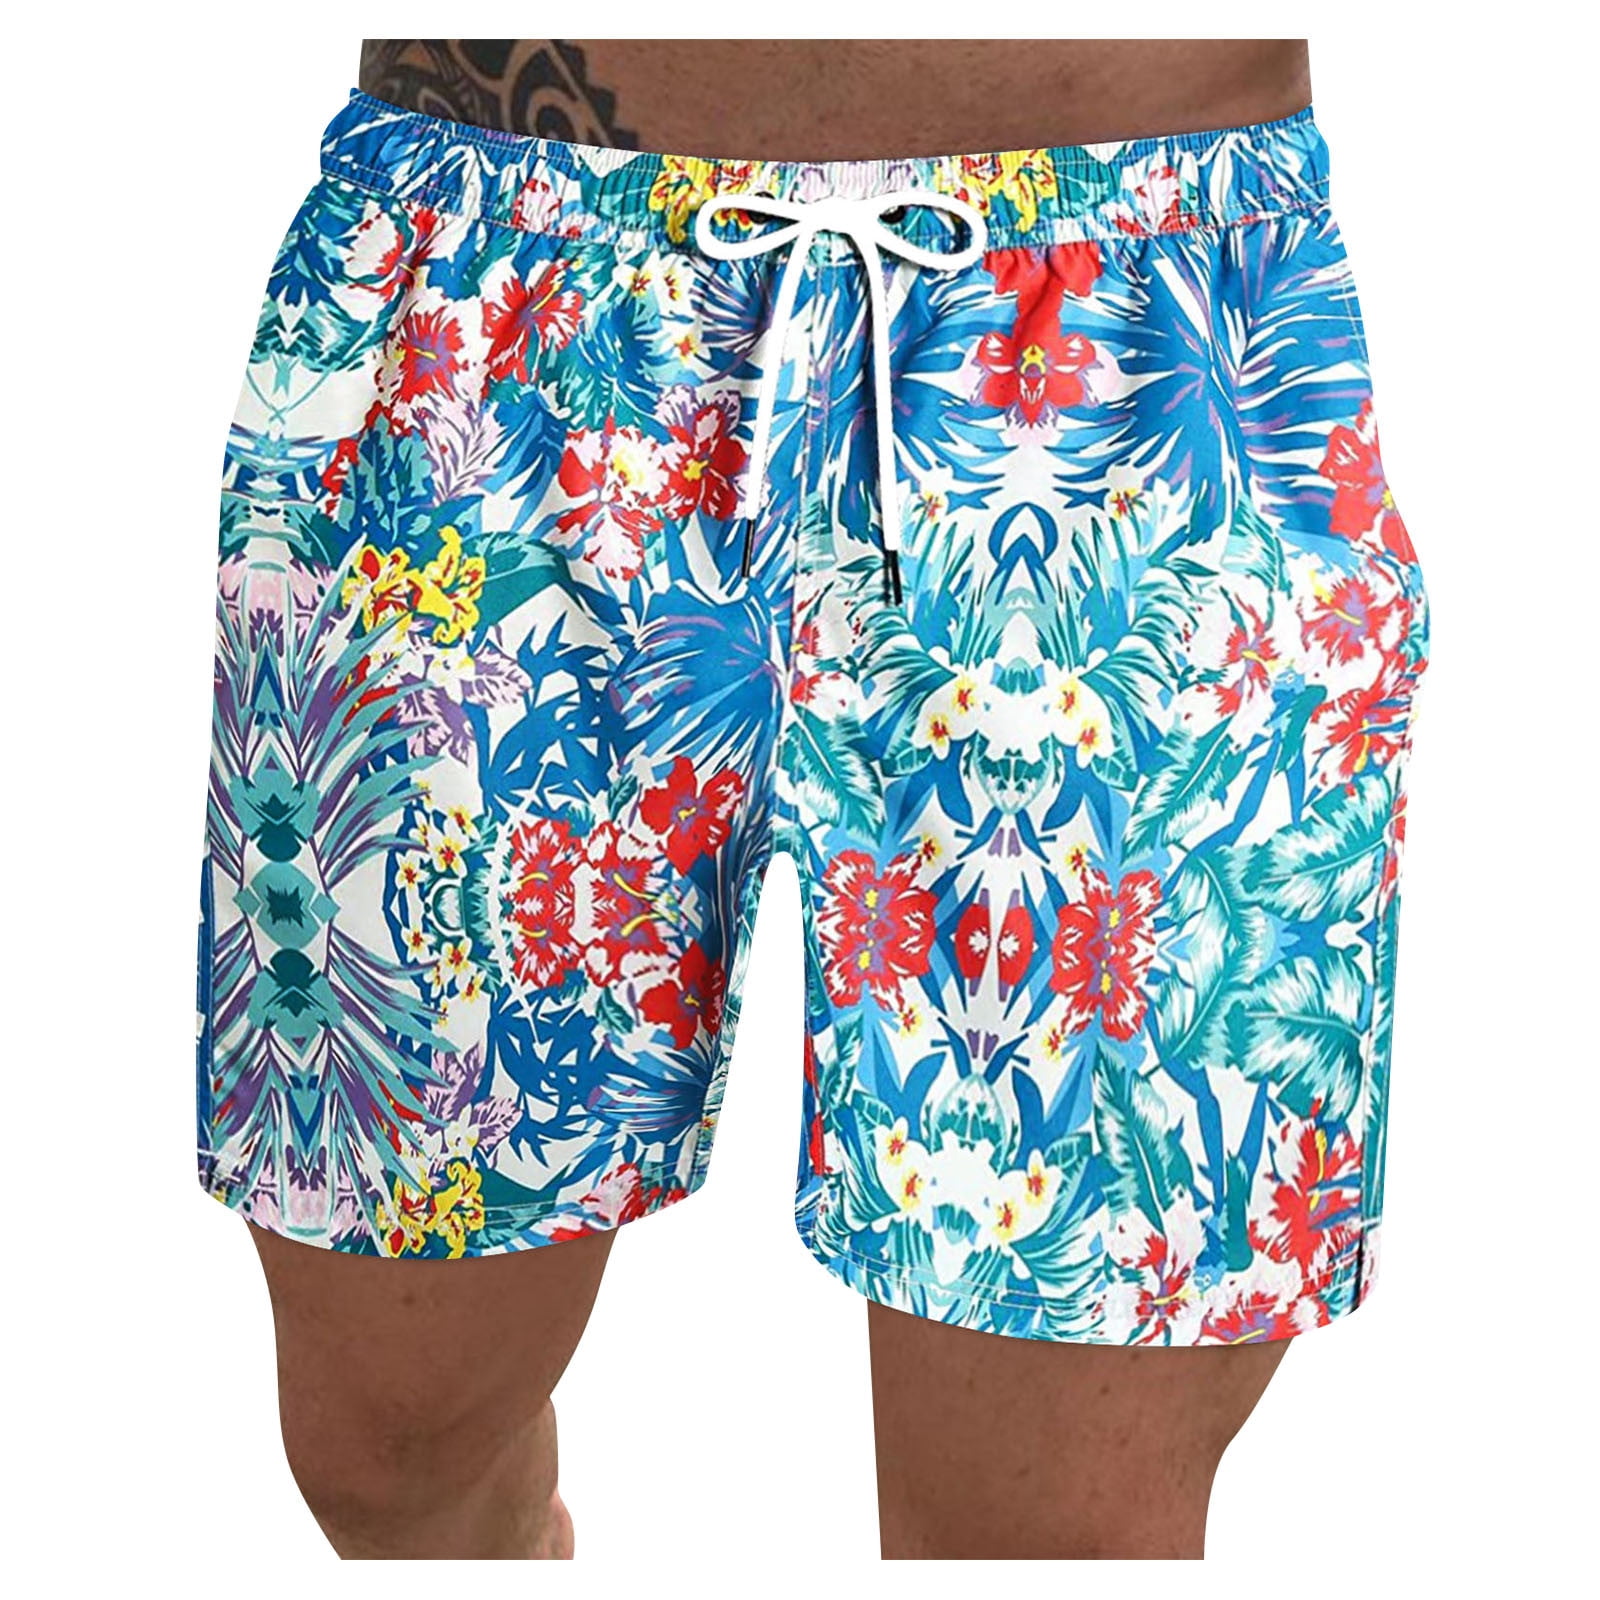 Mens Casual Hawaiian Swim Trunks Retro Board Shorts Quick Dry Beachwear Pants